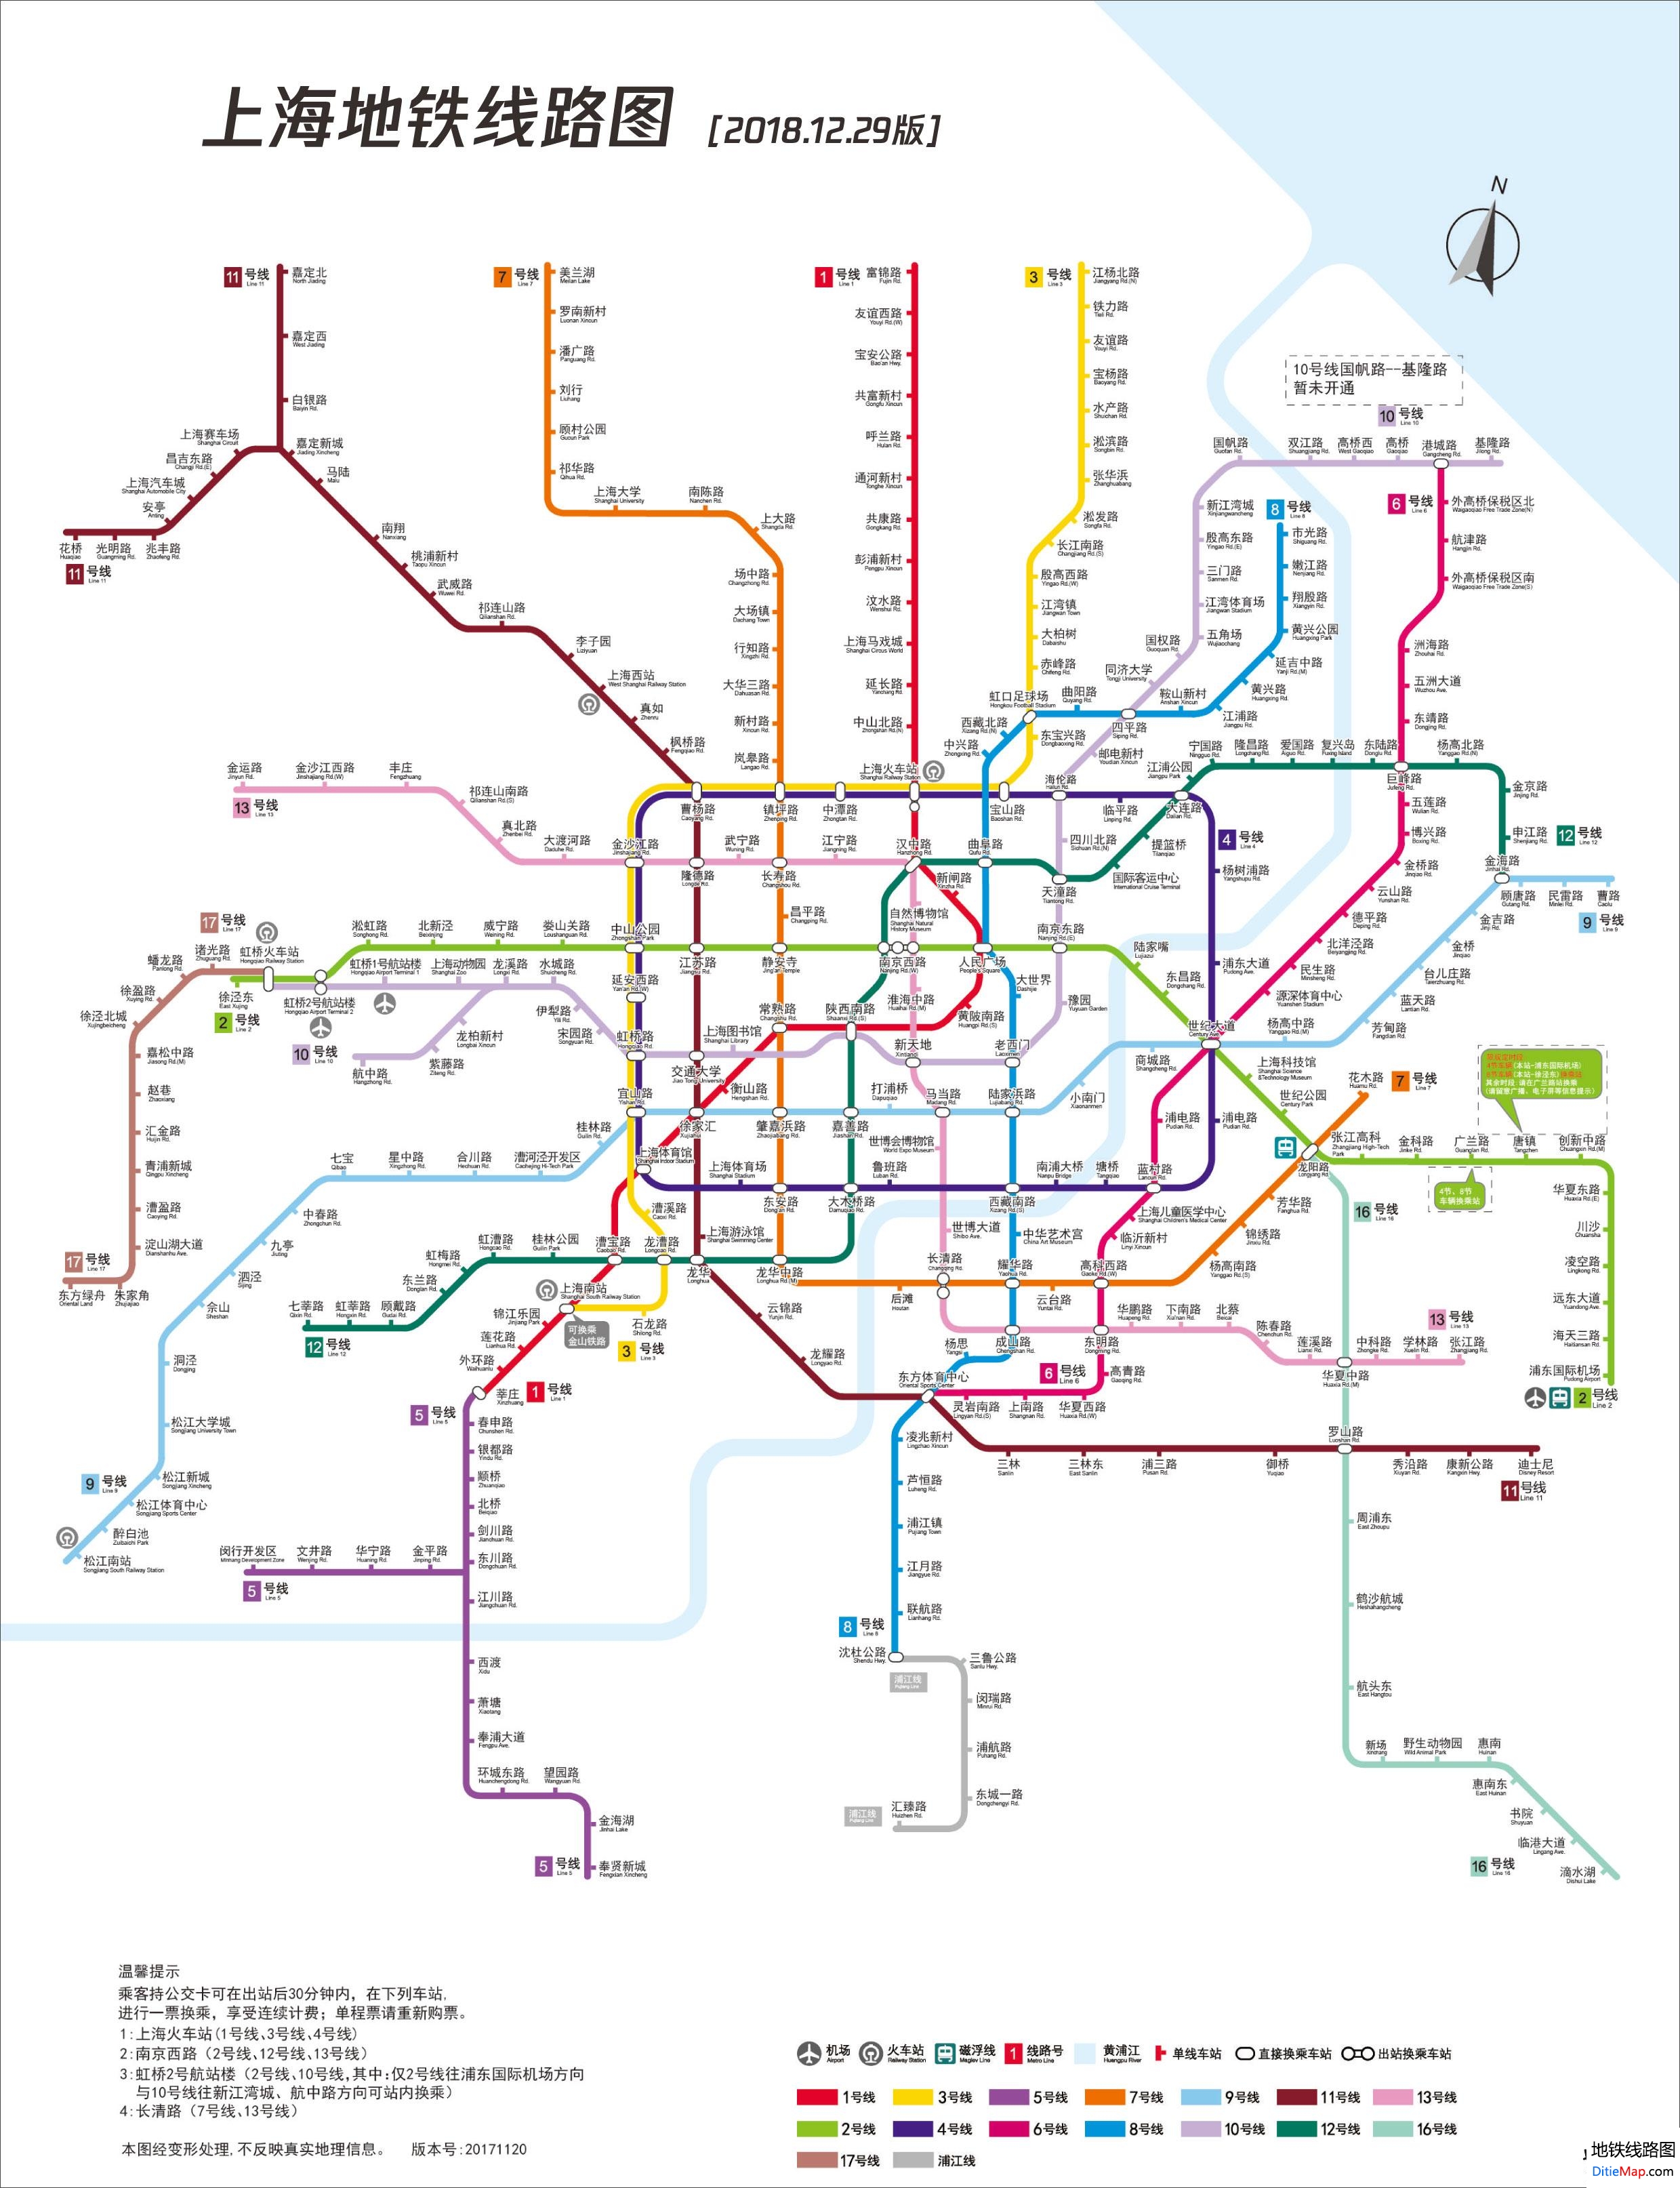 上海地铁线路图 运营时间票价站点 查询下载 上海地铁线路图 上海地铁票价 上海地铁运营时间 上海地铁 上海地铁线路图  第1张